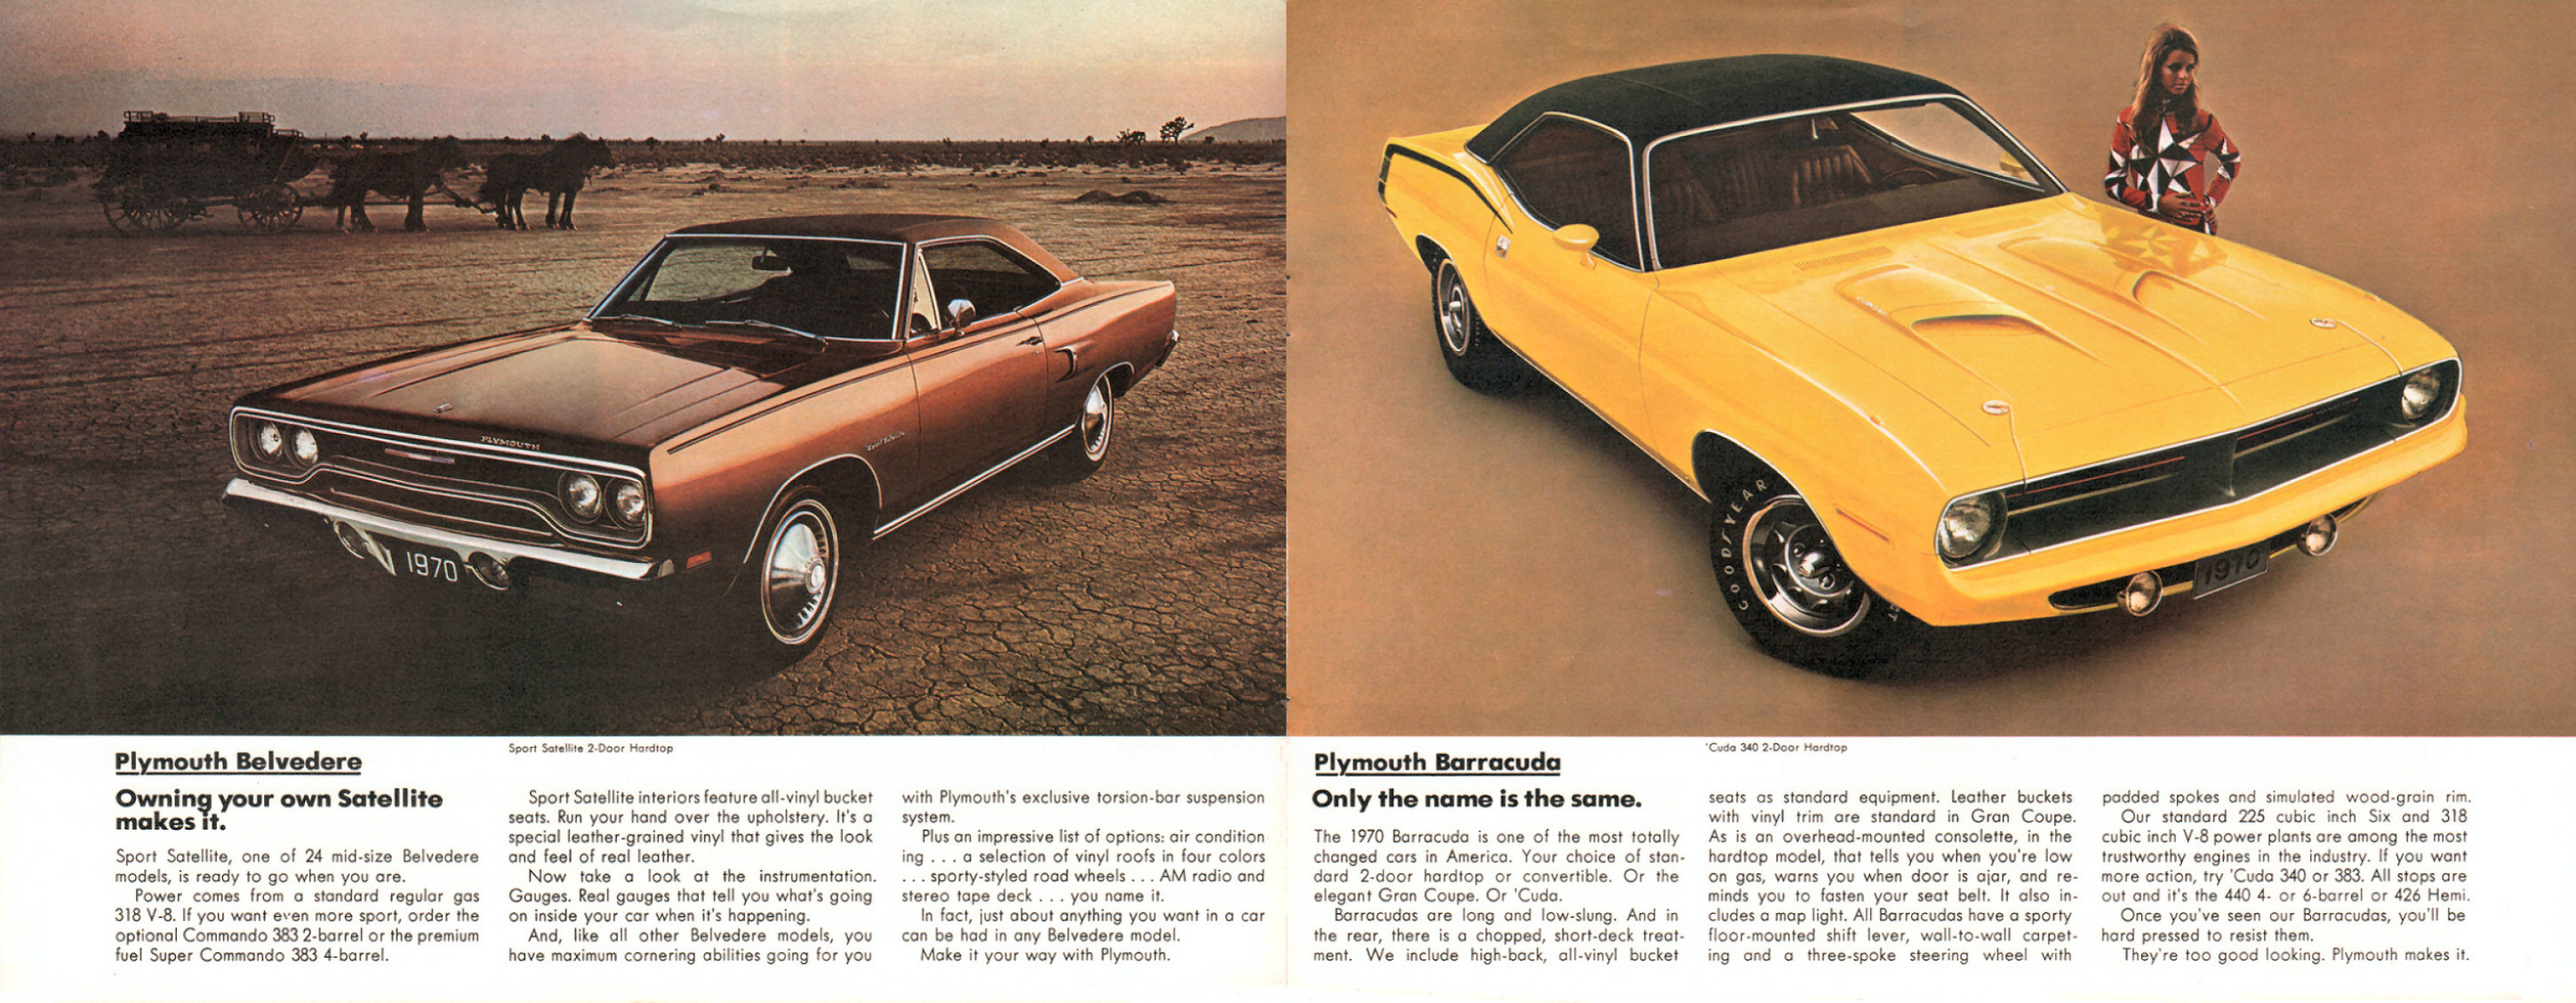 1970_Plymouth__Chrysler-04-05